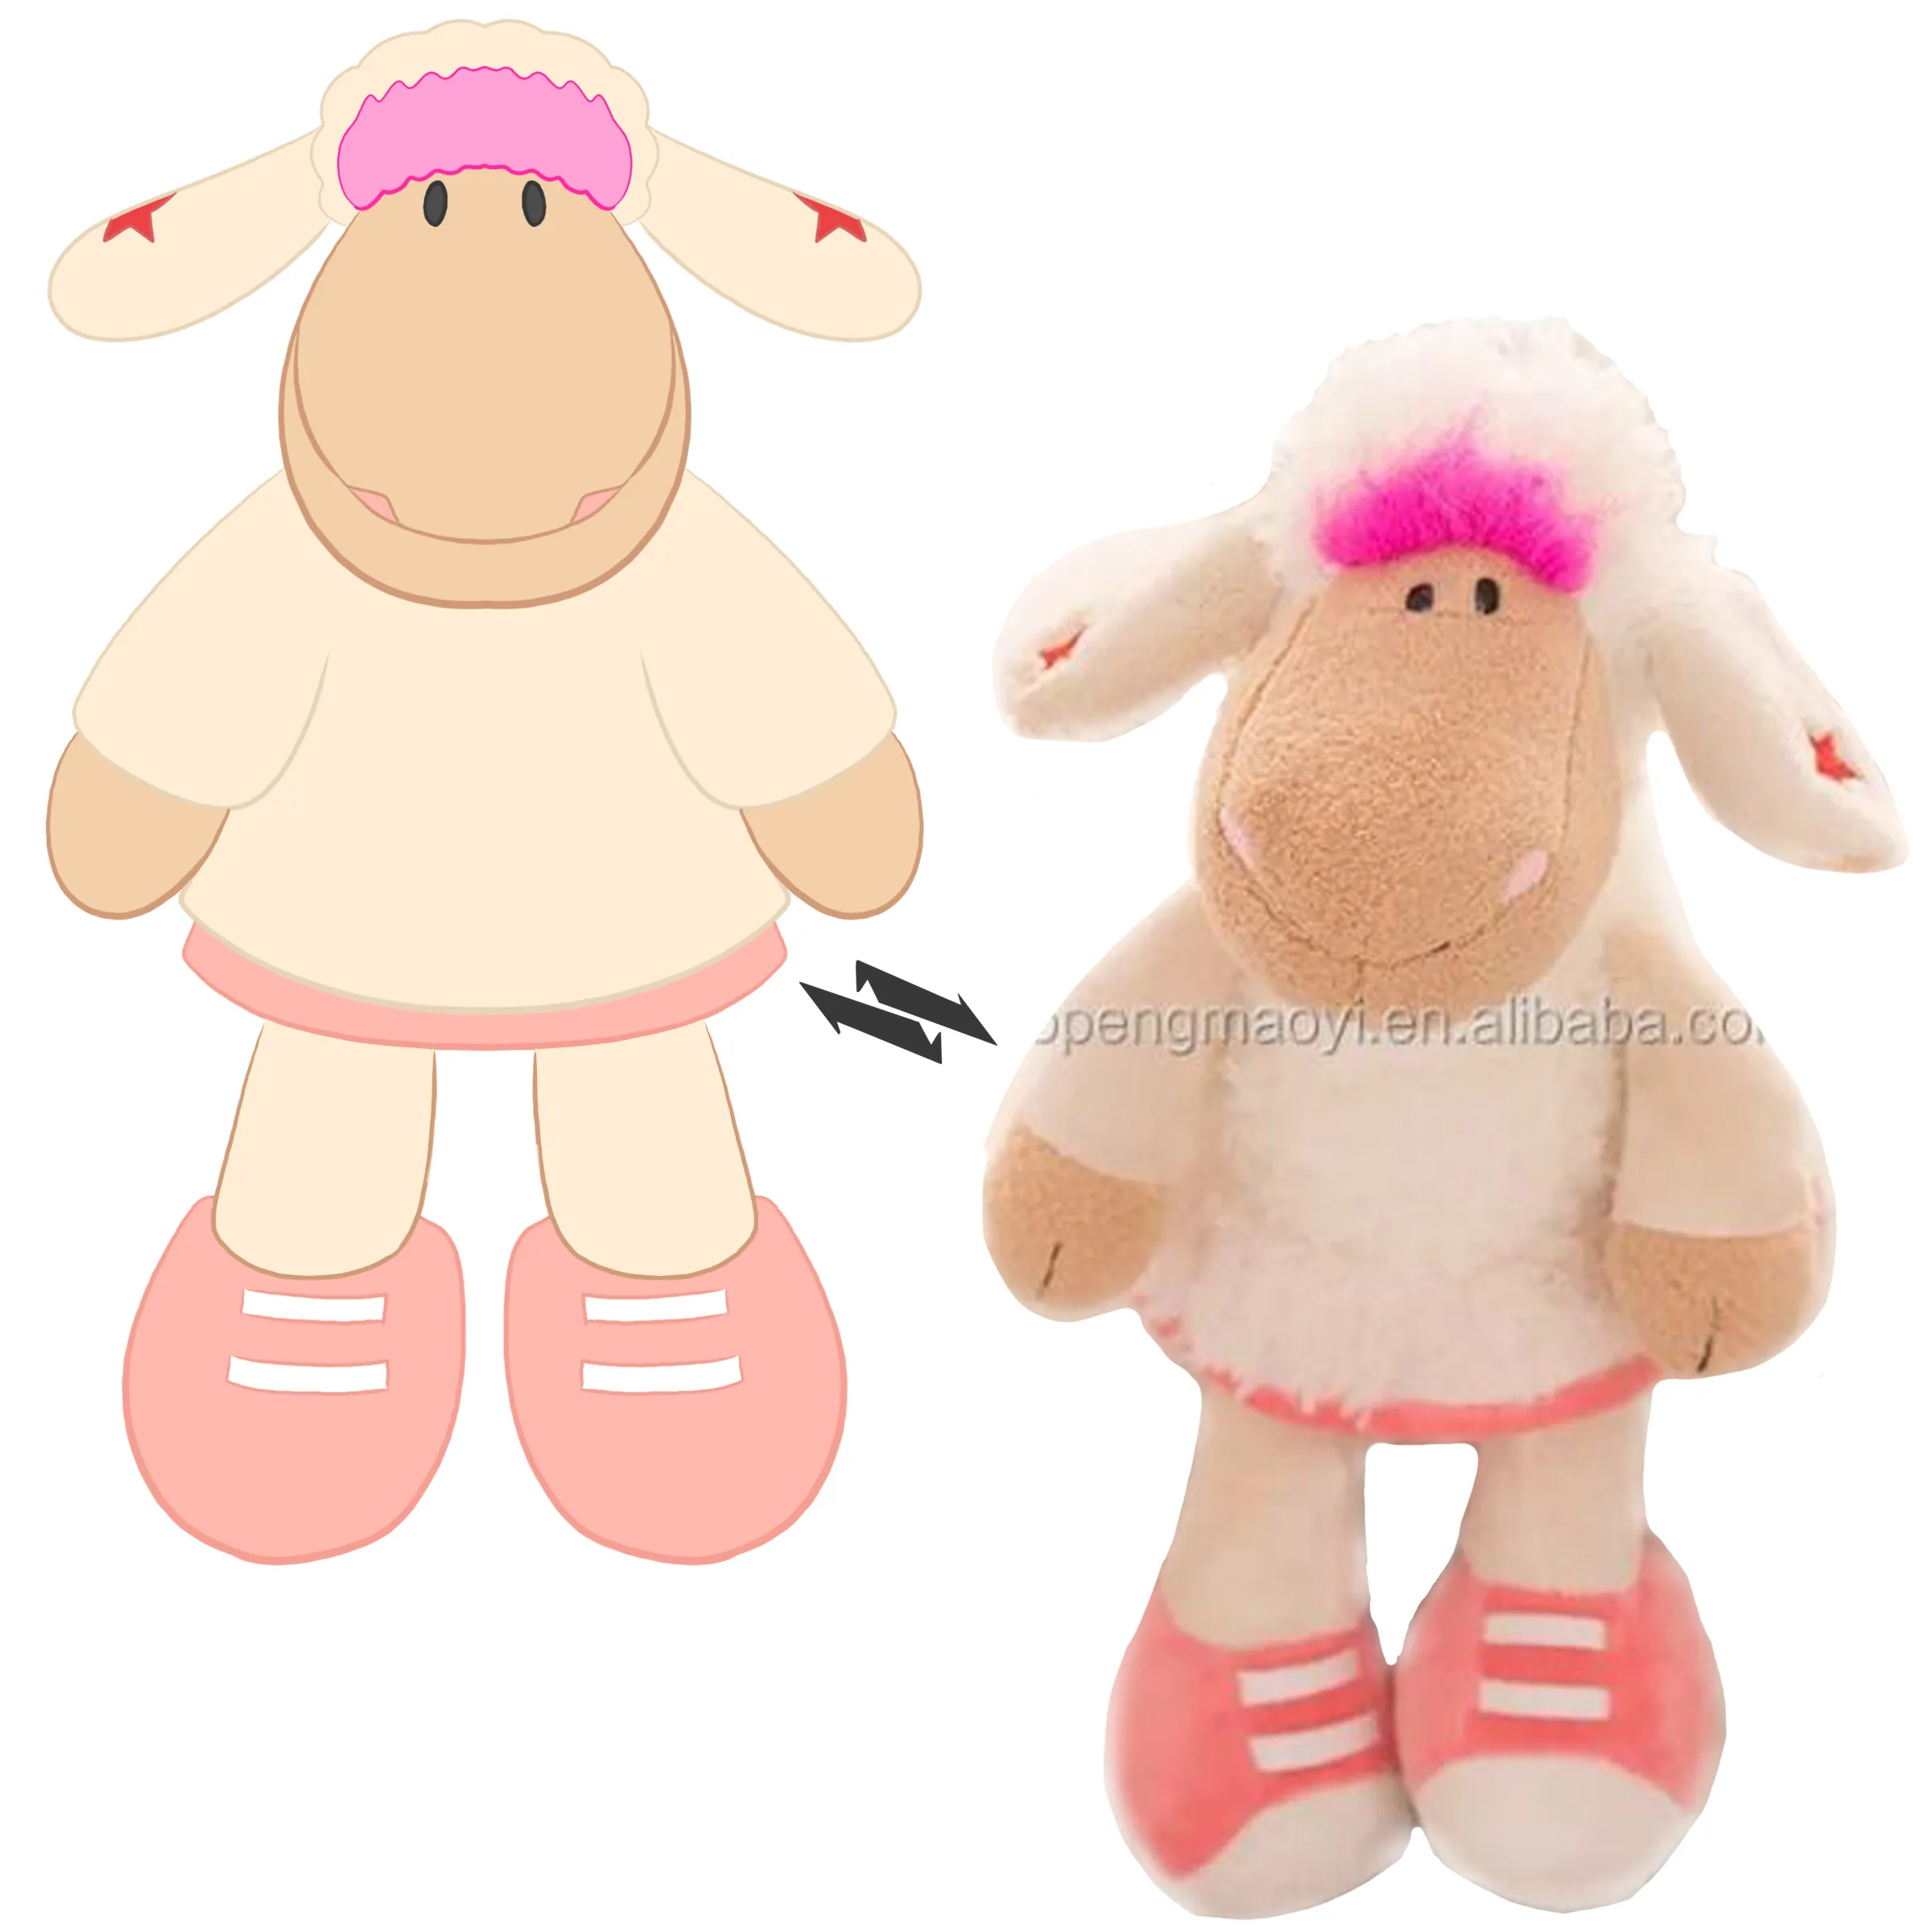 गर्म बिक्री भरवां आलीशान नरम खिलौने <span class=keywords><strong>cuddly</strong></span> भेड़ भेड़ भेड़ के बच्चे के खिलौने बच्चों के लिए